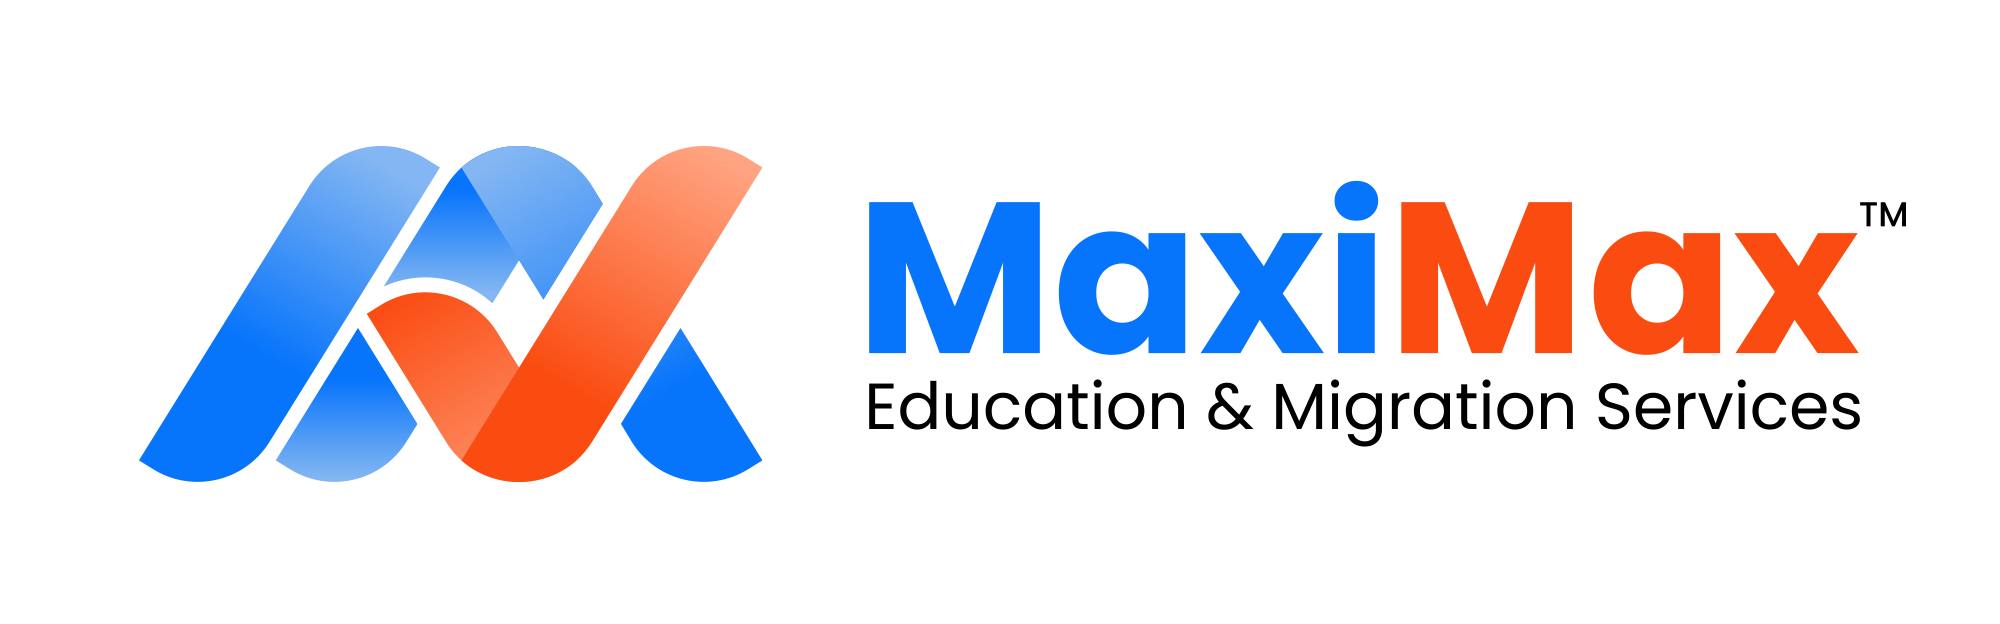 devsign client maximax logo